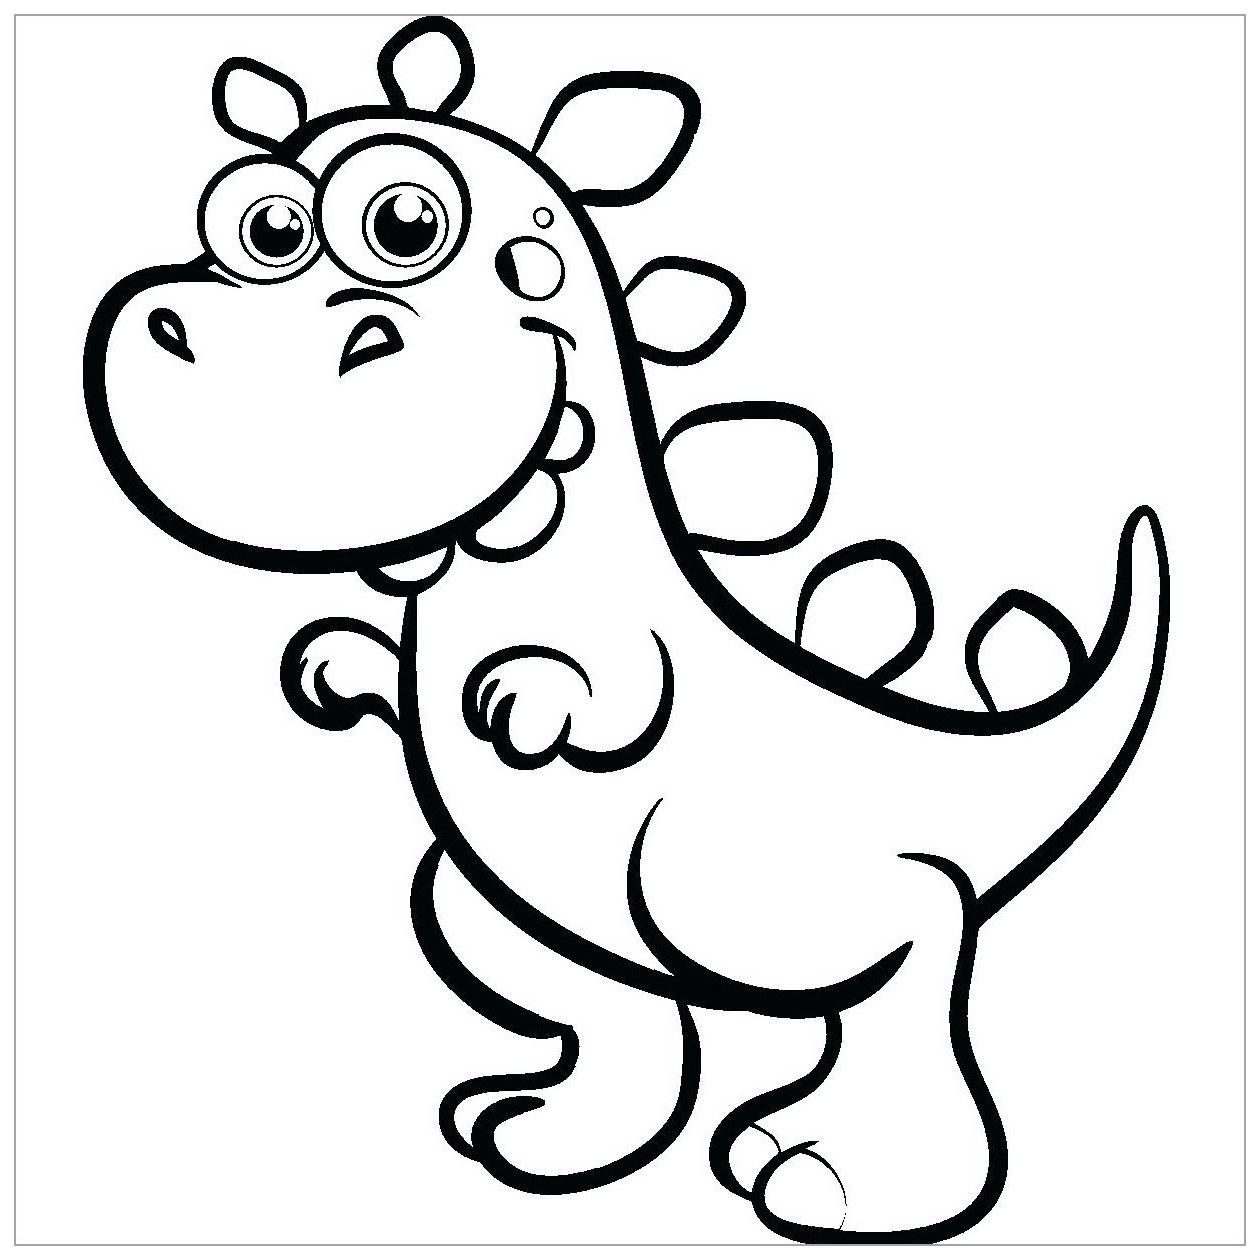 Coloração de um dinossauro pequeno com olhos grandes